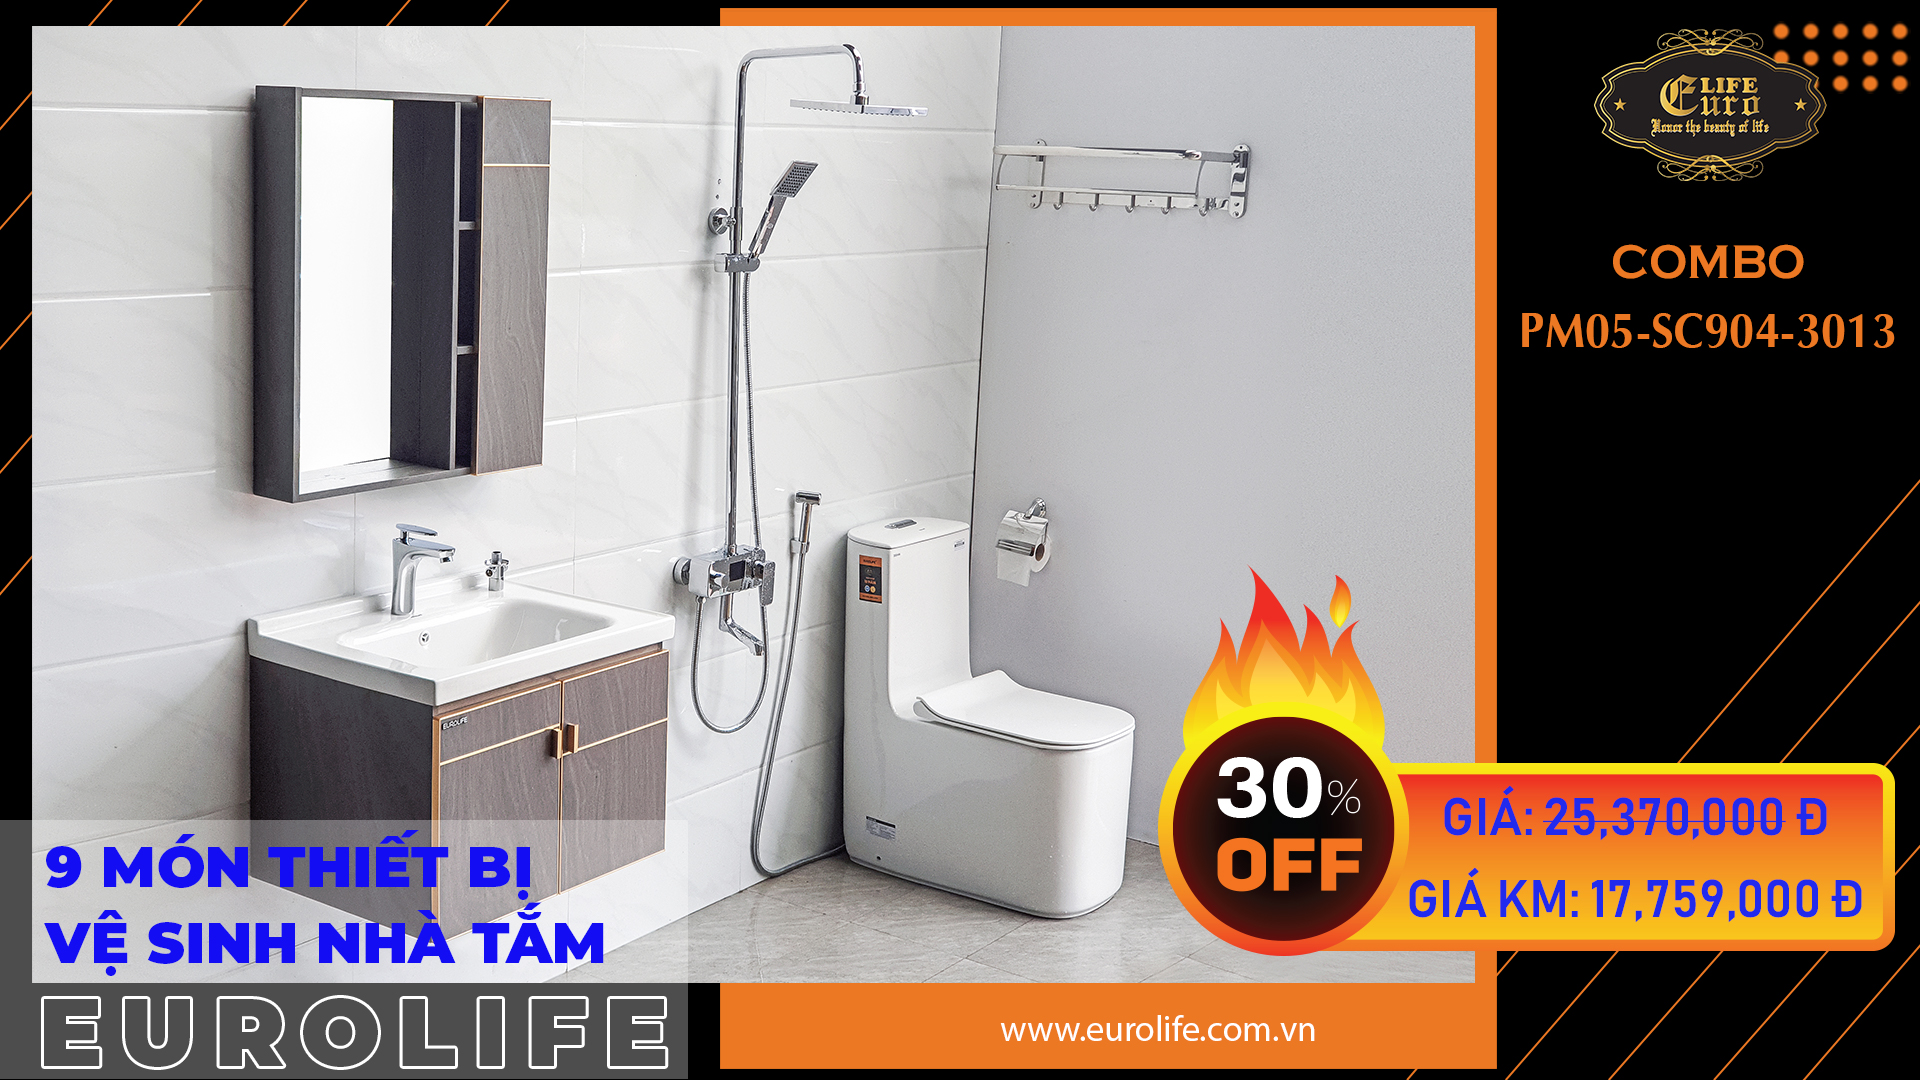 Trọn bộ thiết bị vệ sinh nhà tắm Eurolife CB PM05-SC904-3013 – SEN ...